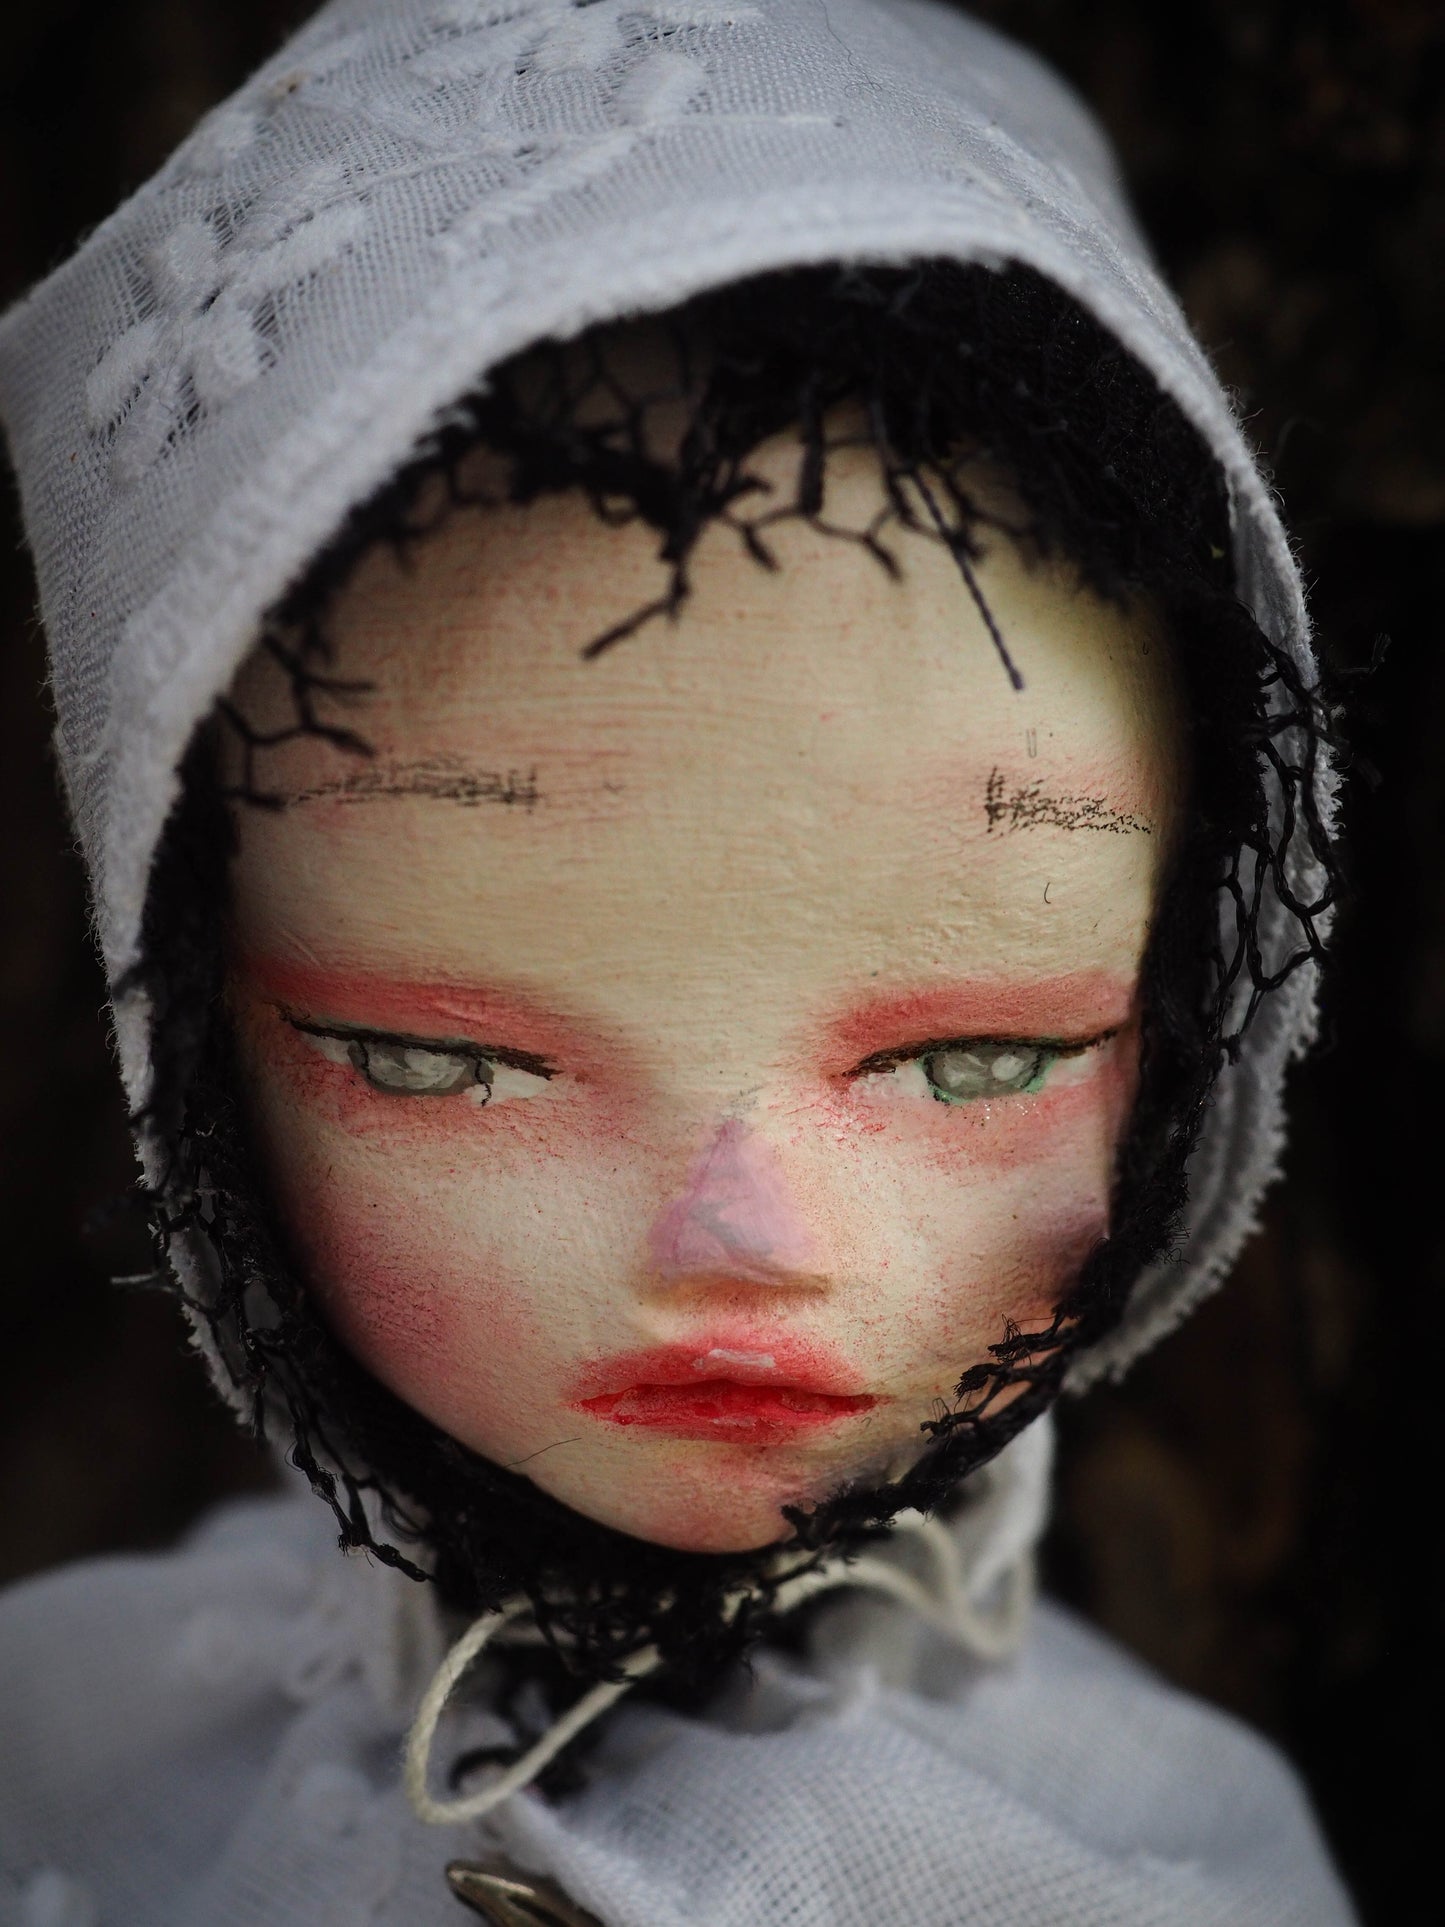 THE WITCH OF SALEM - An original handmade Halloween original art doll by Danita Art